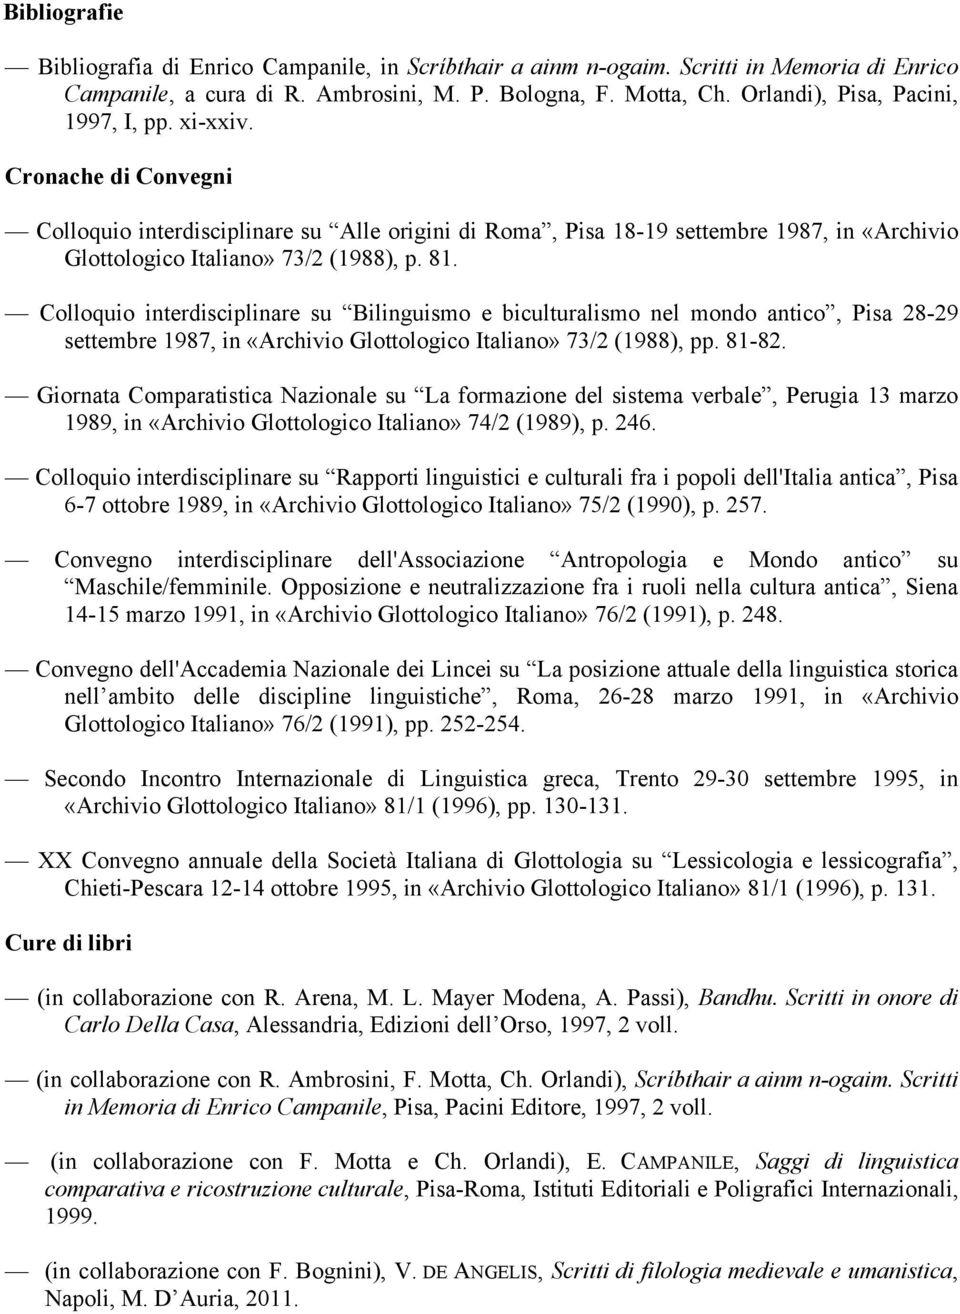 81. Colloquio interdisciplinare su Bilinguismo e biculturalismo nel mondo antico, Pisa 28-29 settembre 1987, in «Archivio Glottologico Italiano» 73/2 (1988), pp. 81-82.